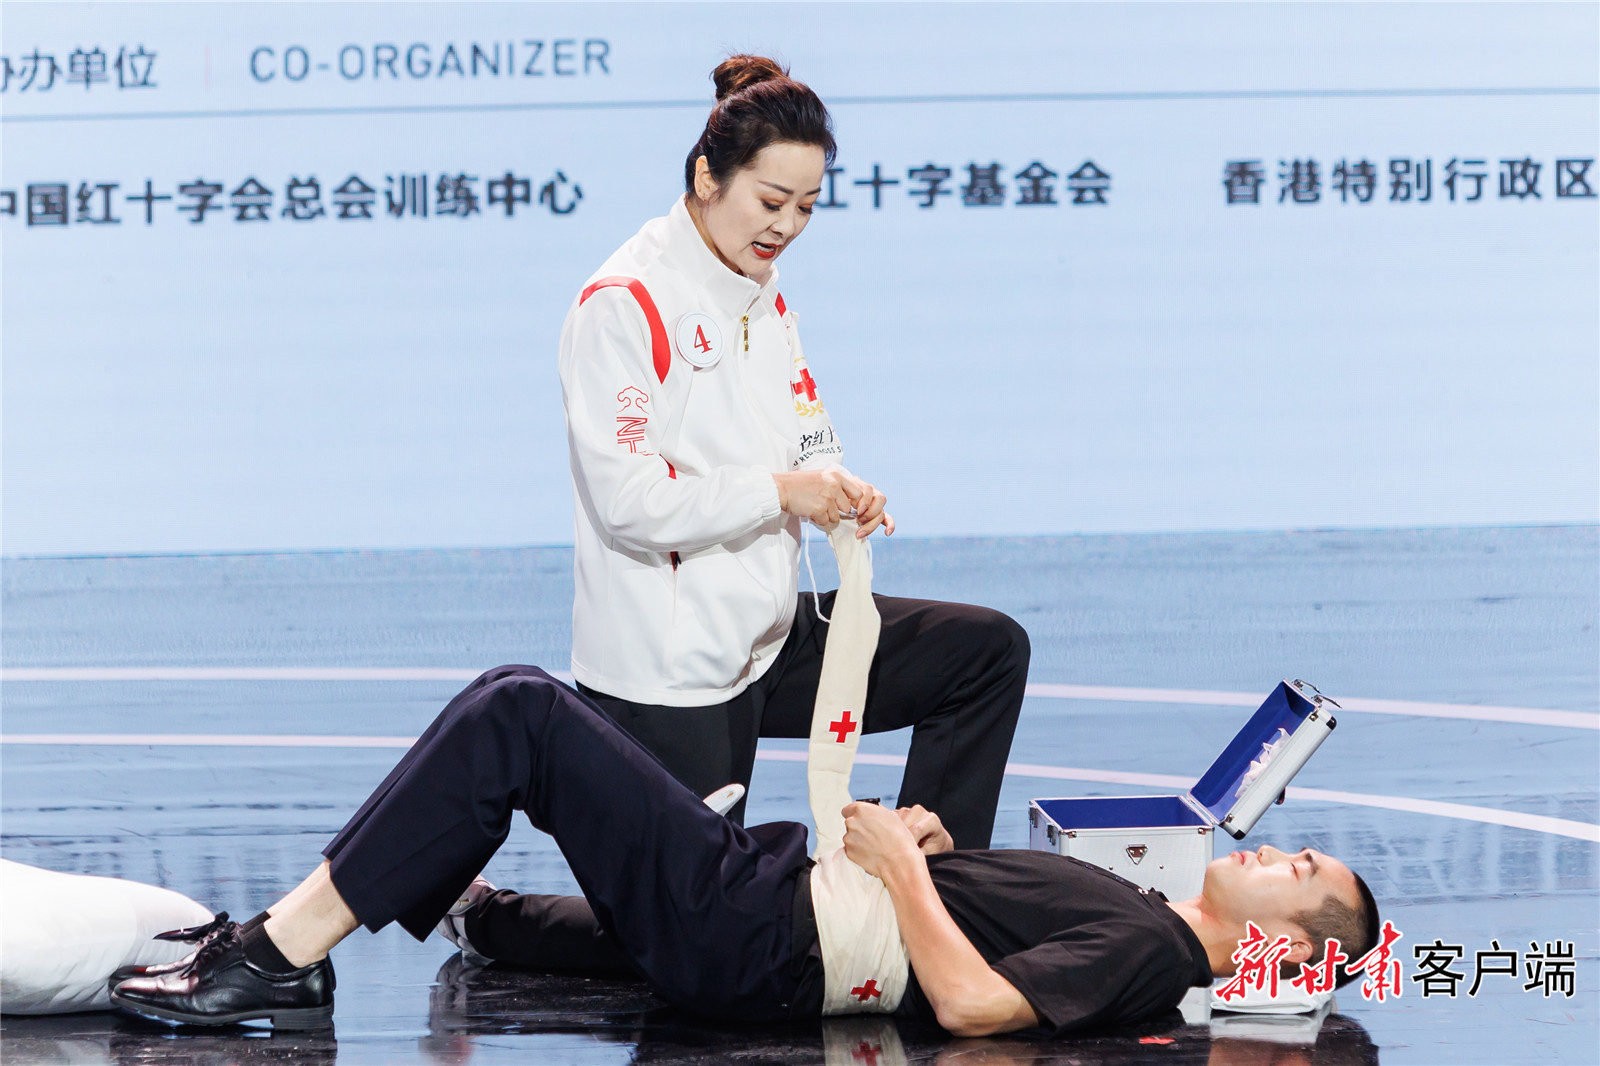 甘肃在第七届全国红十字应急救护大赛中取得历史最佳成绩